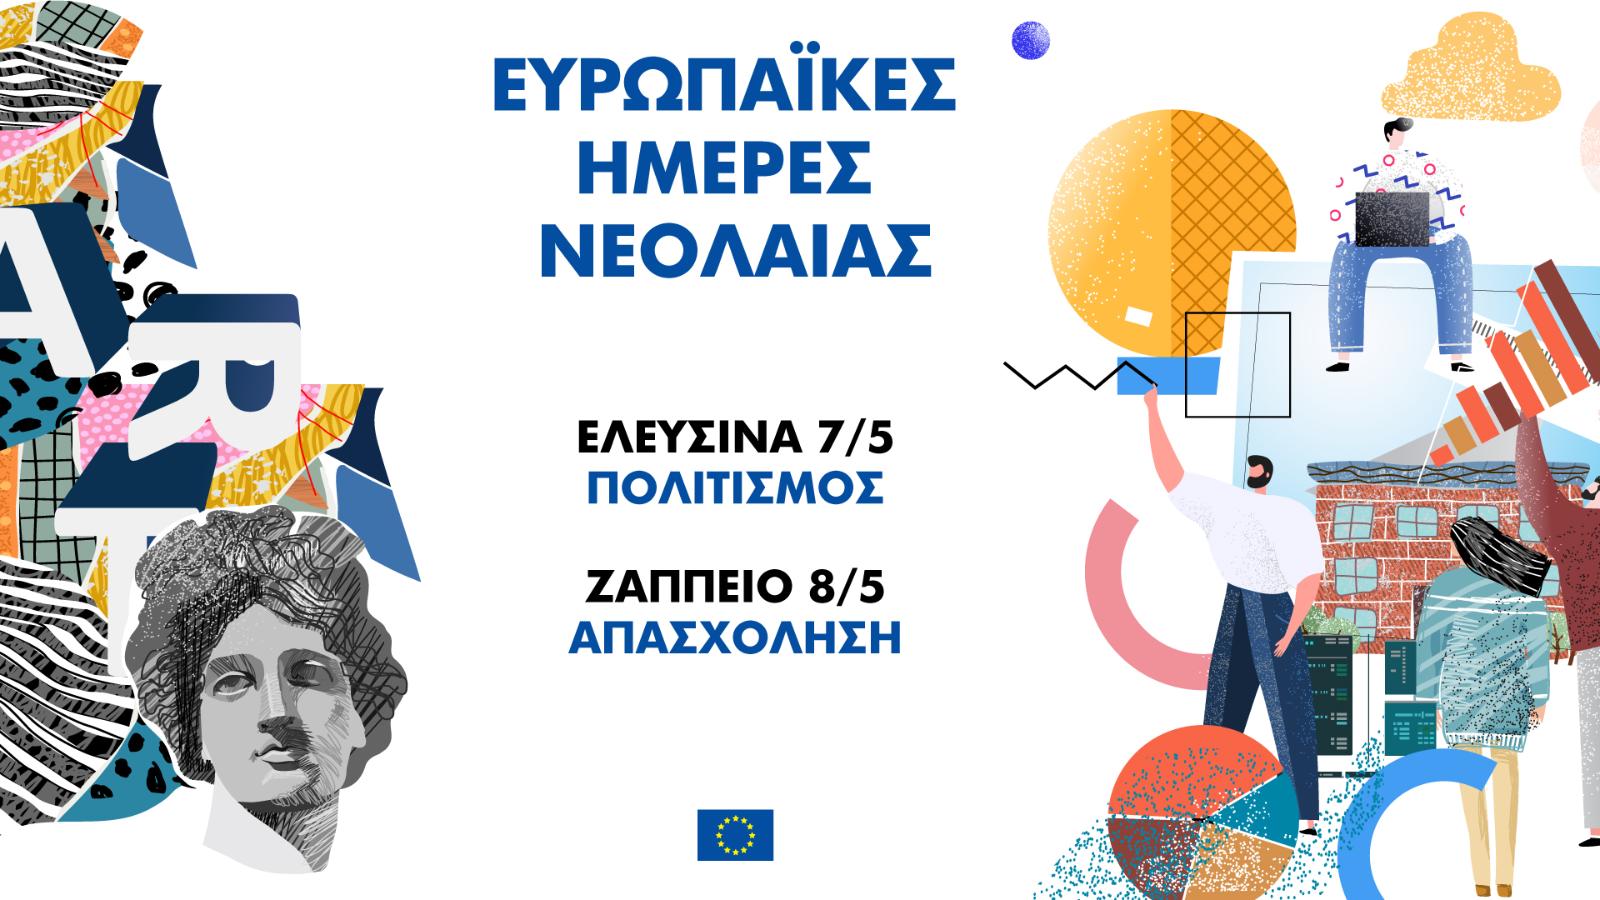 ΕΕ: Ευρωπαϊκές Ημέρες Νεολαίας στην Ελευσίνα και στο Ζάππειο